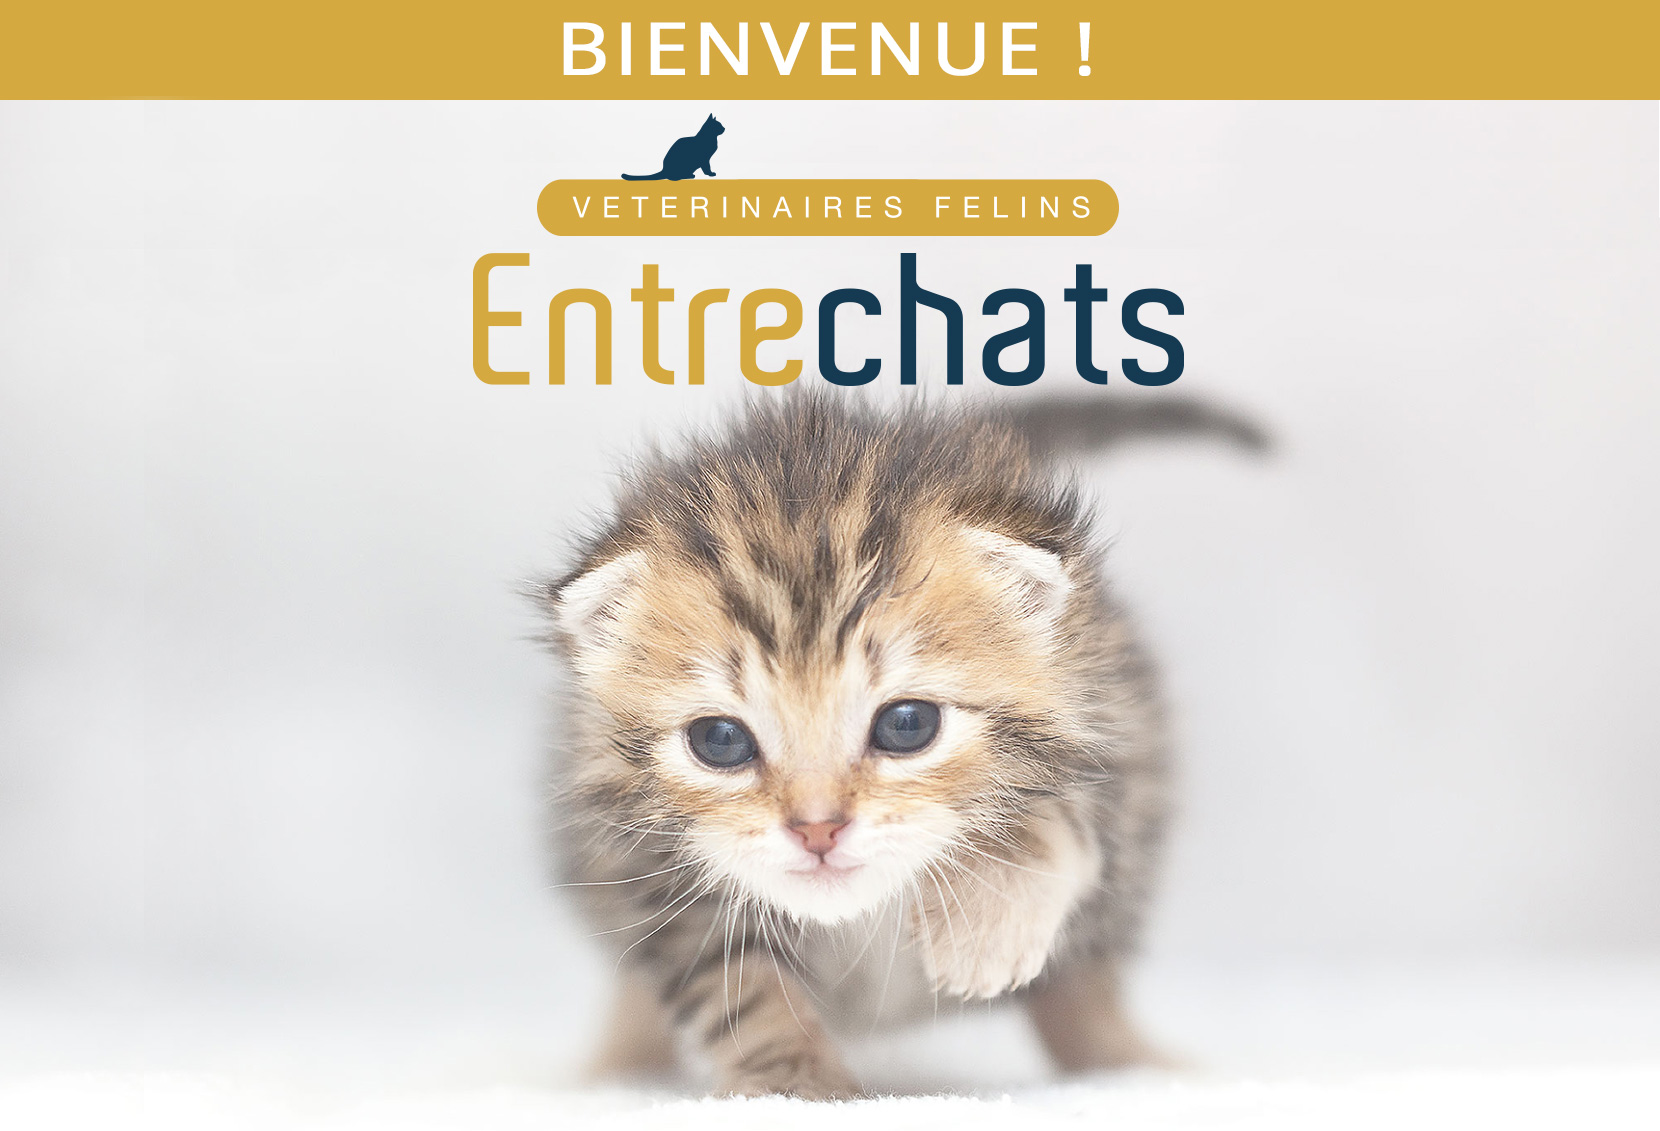 Chaton accourant chez ses vétérinaires félins à Lyon 69001, Entrechats - Santé et soins de votre chat